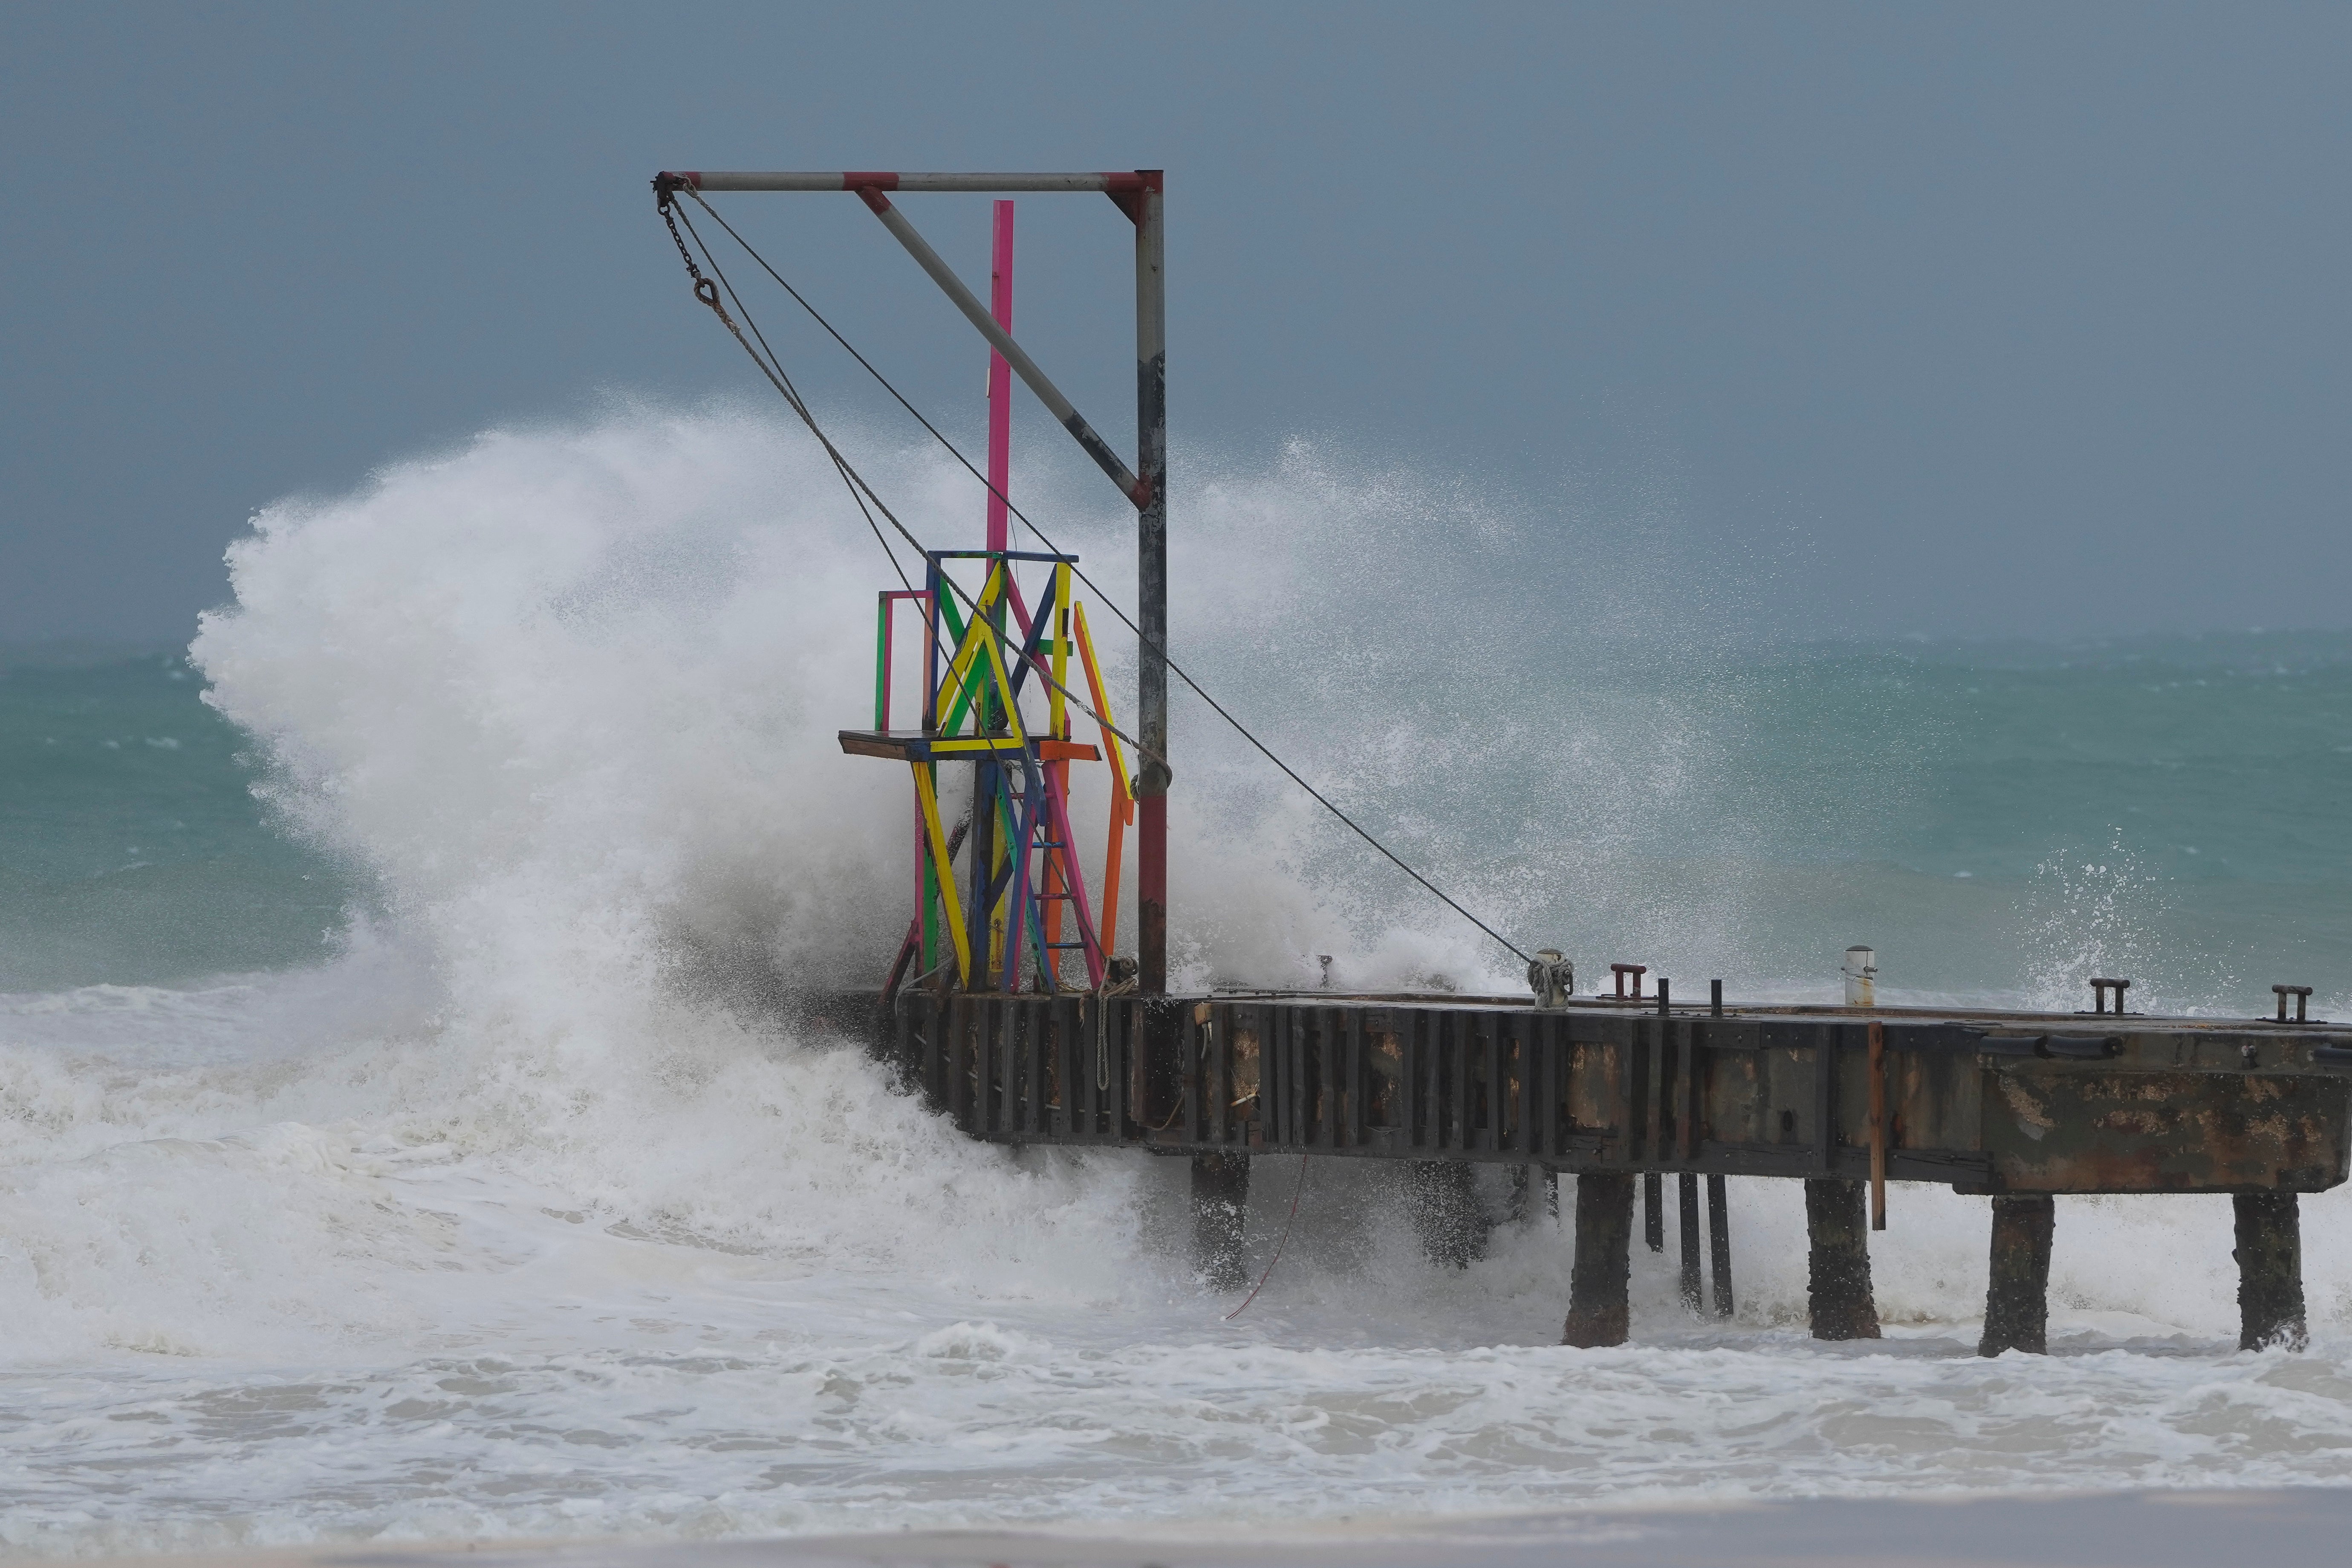 ハリケーン・ベリルが月曜日に強打し、バルバドス・ブリッジタウンの桟橋に波が襲った。